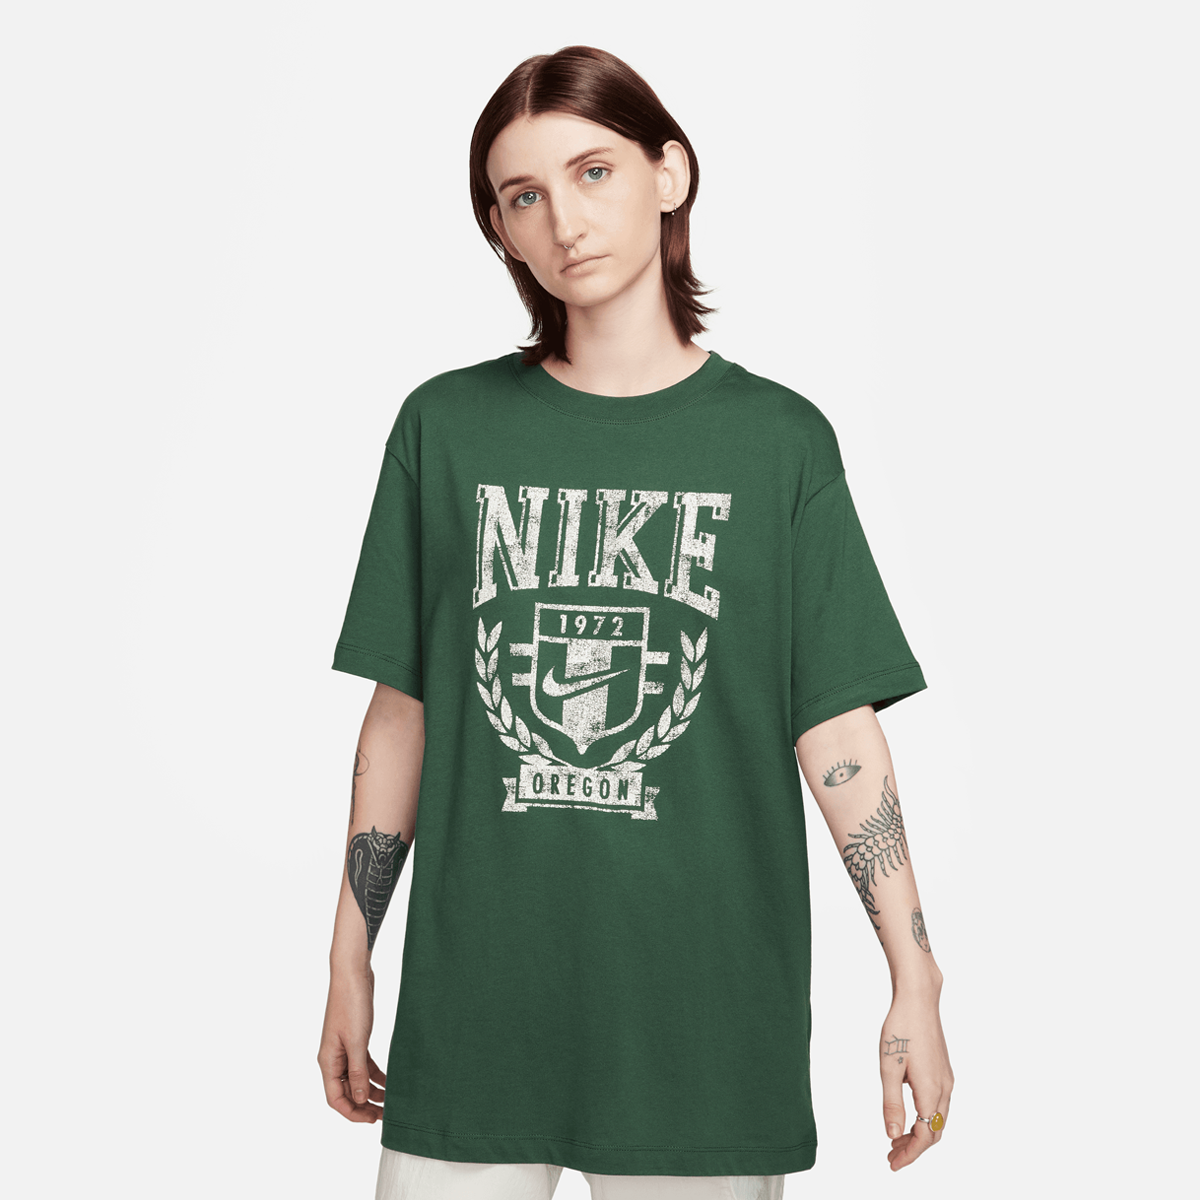 NIKE Sportswear T-shirt, T-Shirts, Abbigliamento, fir, Dimensione: XL, dimensioni disponibili:XS,S,M,XL product